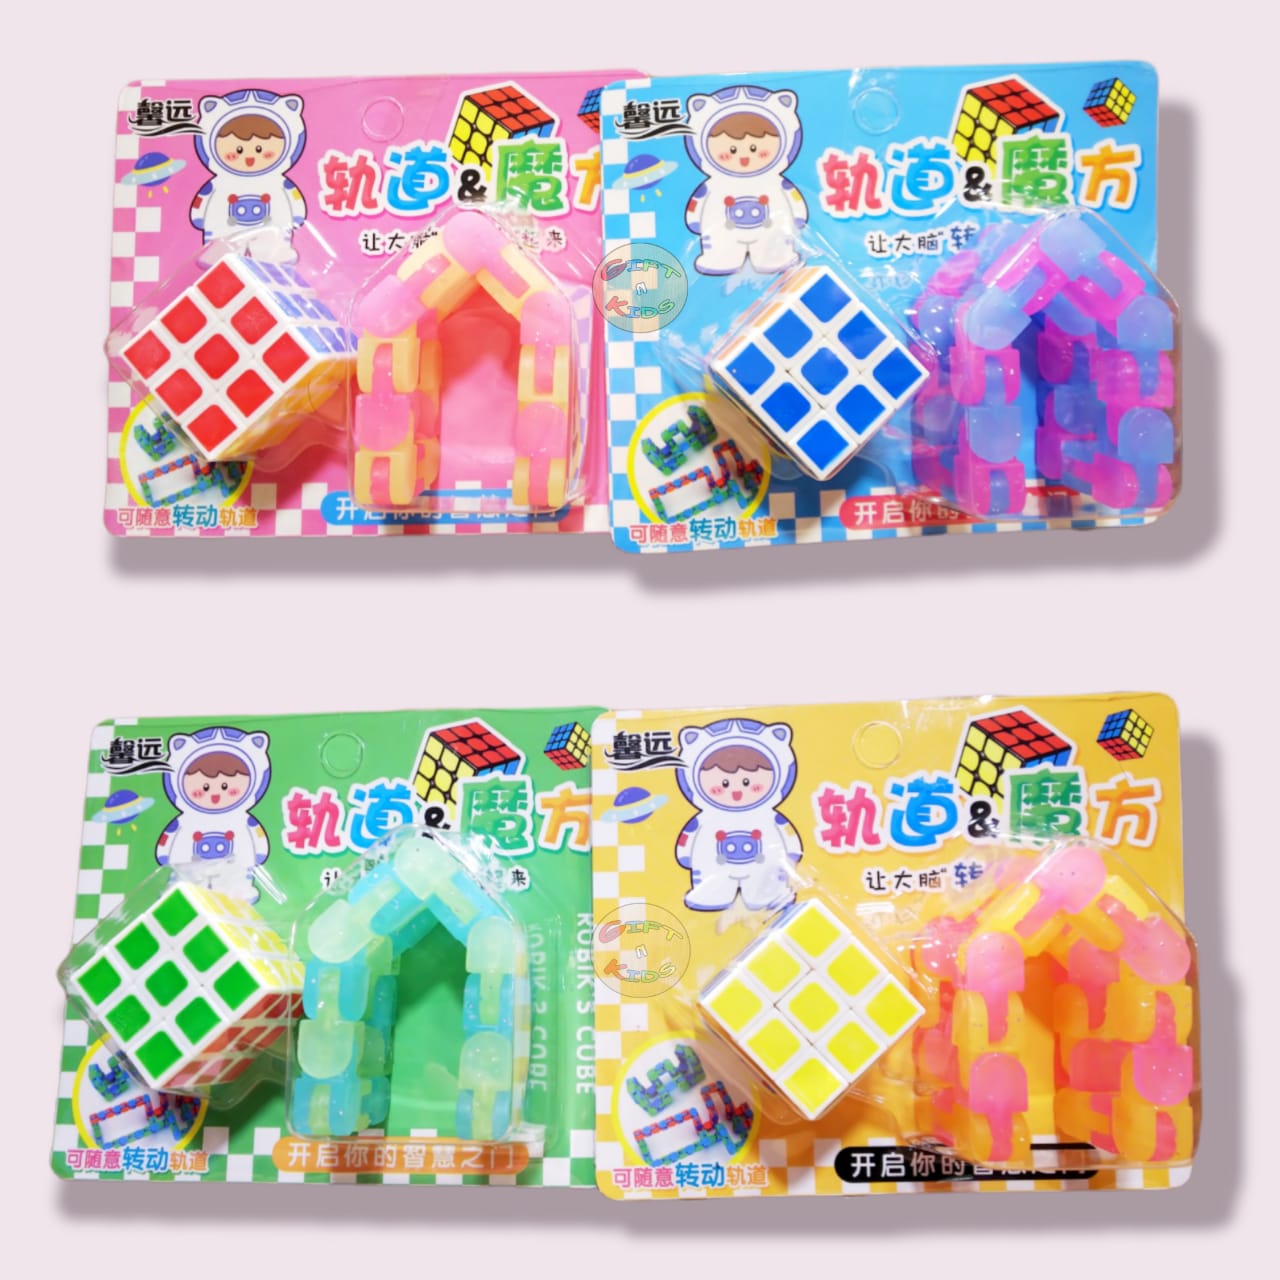 2in1 Rubik's Cube Fidget Toy Pack